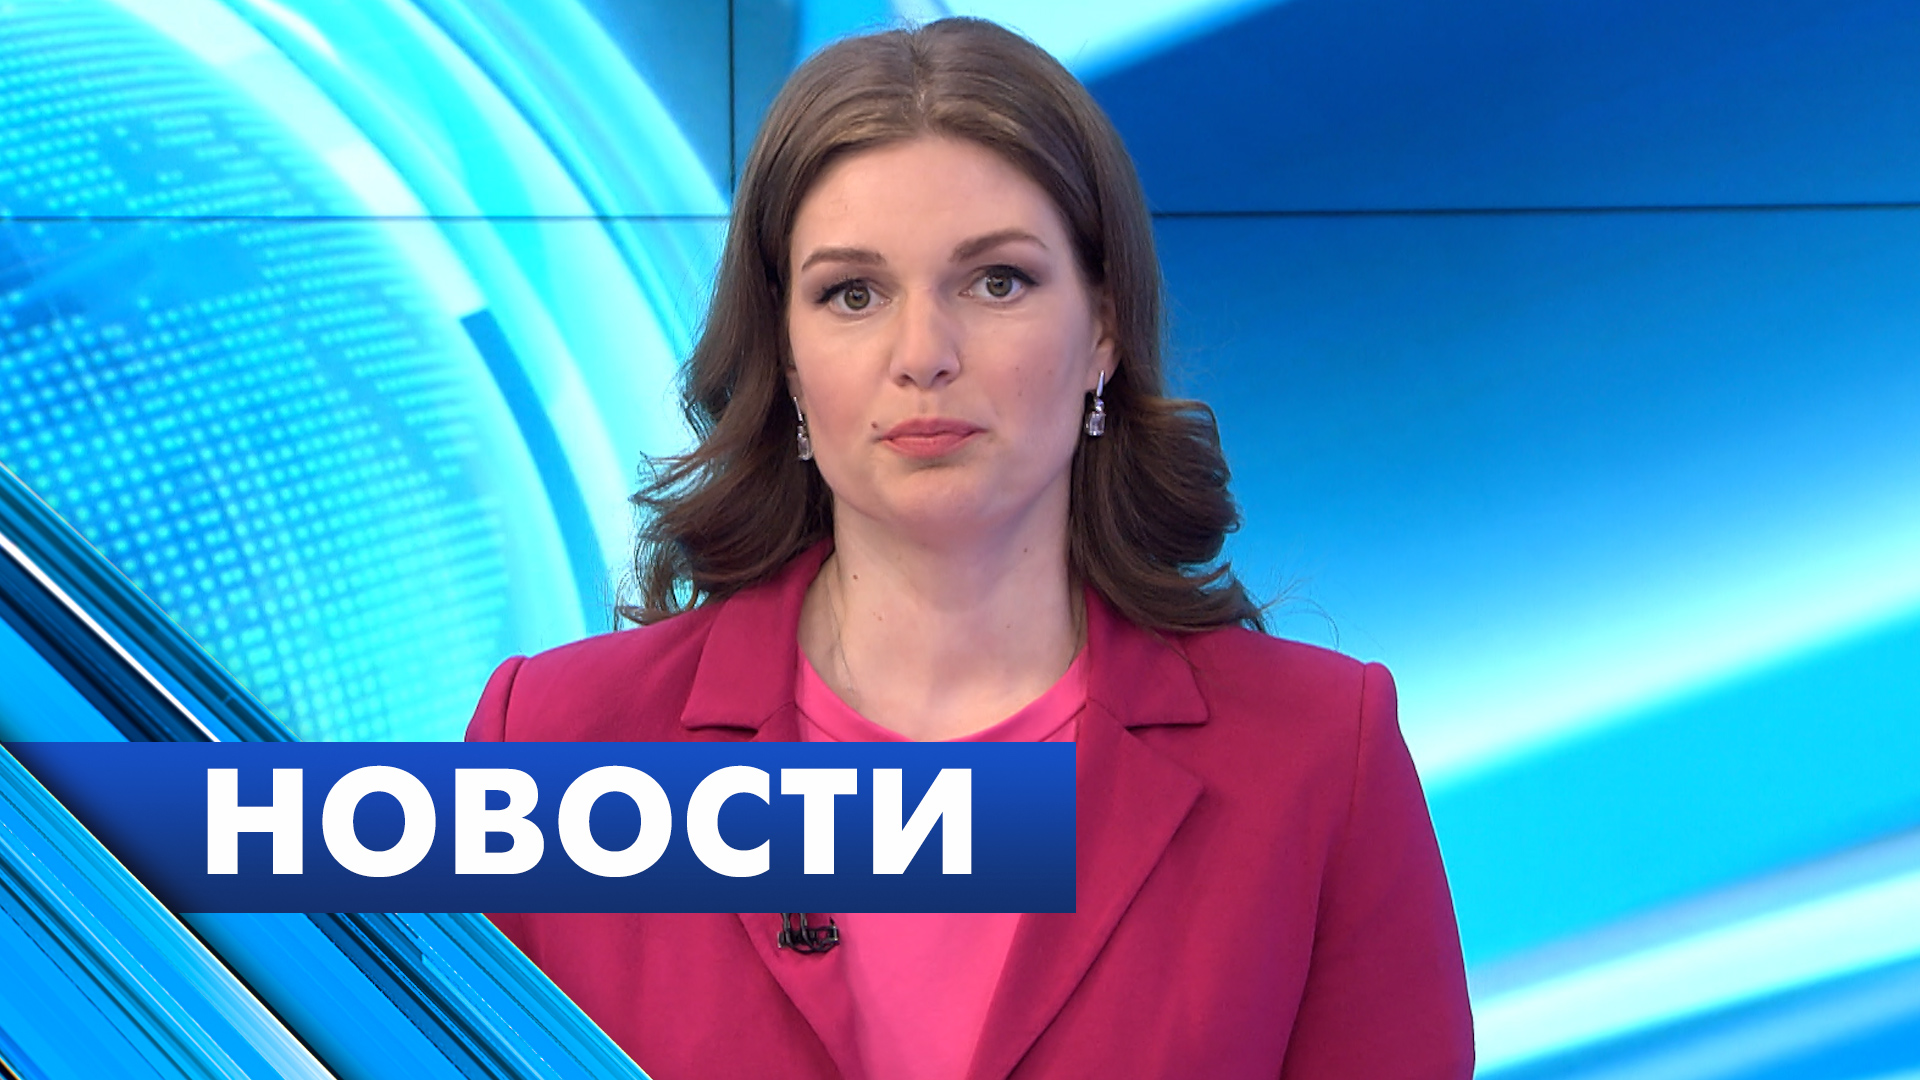 Главные новости Петербурга / 23 апреля